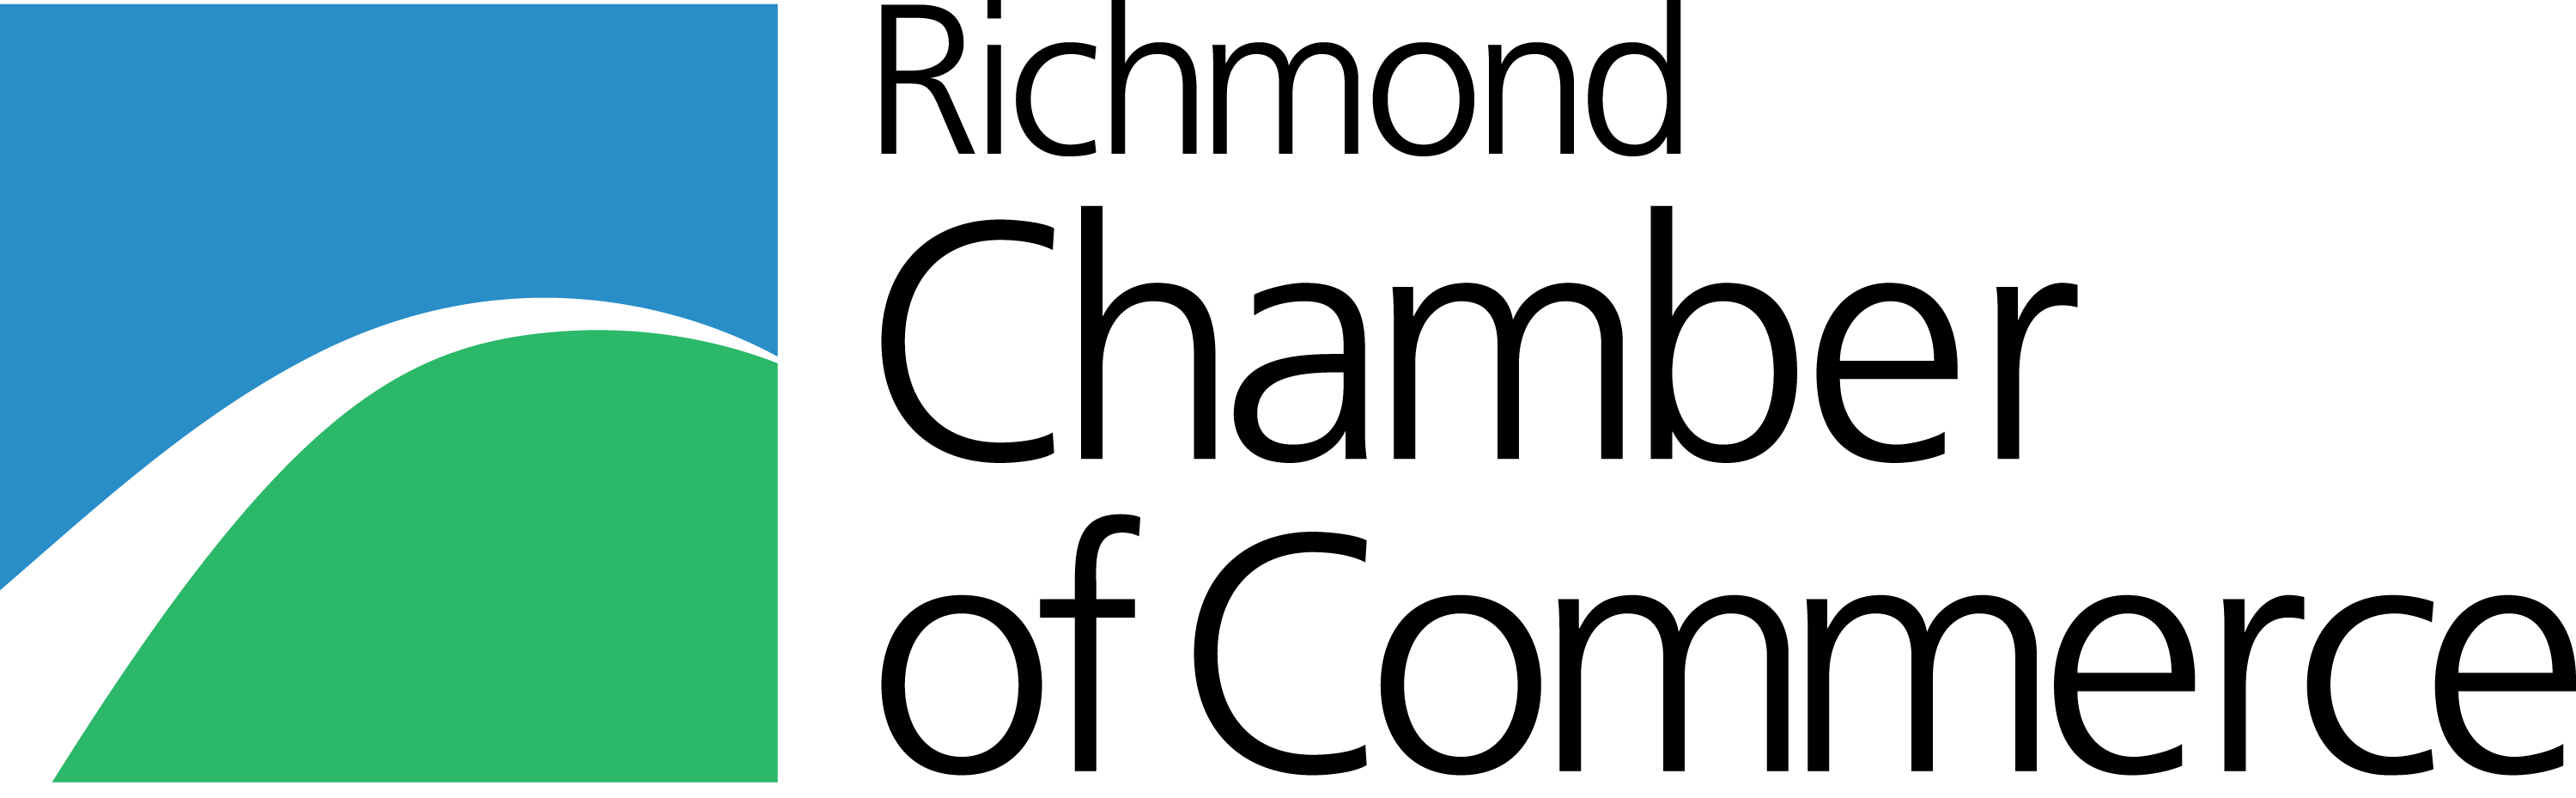 另開視窗，連結到加拿大里奇蒙商會 Richmond Chamber of Commerce